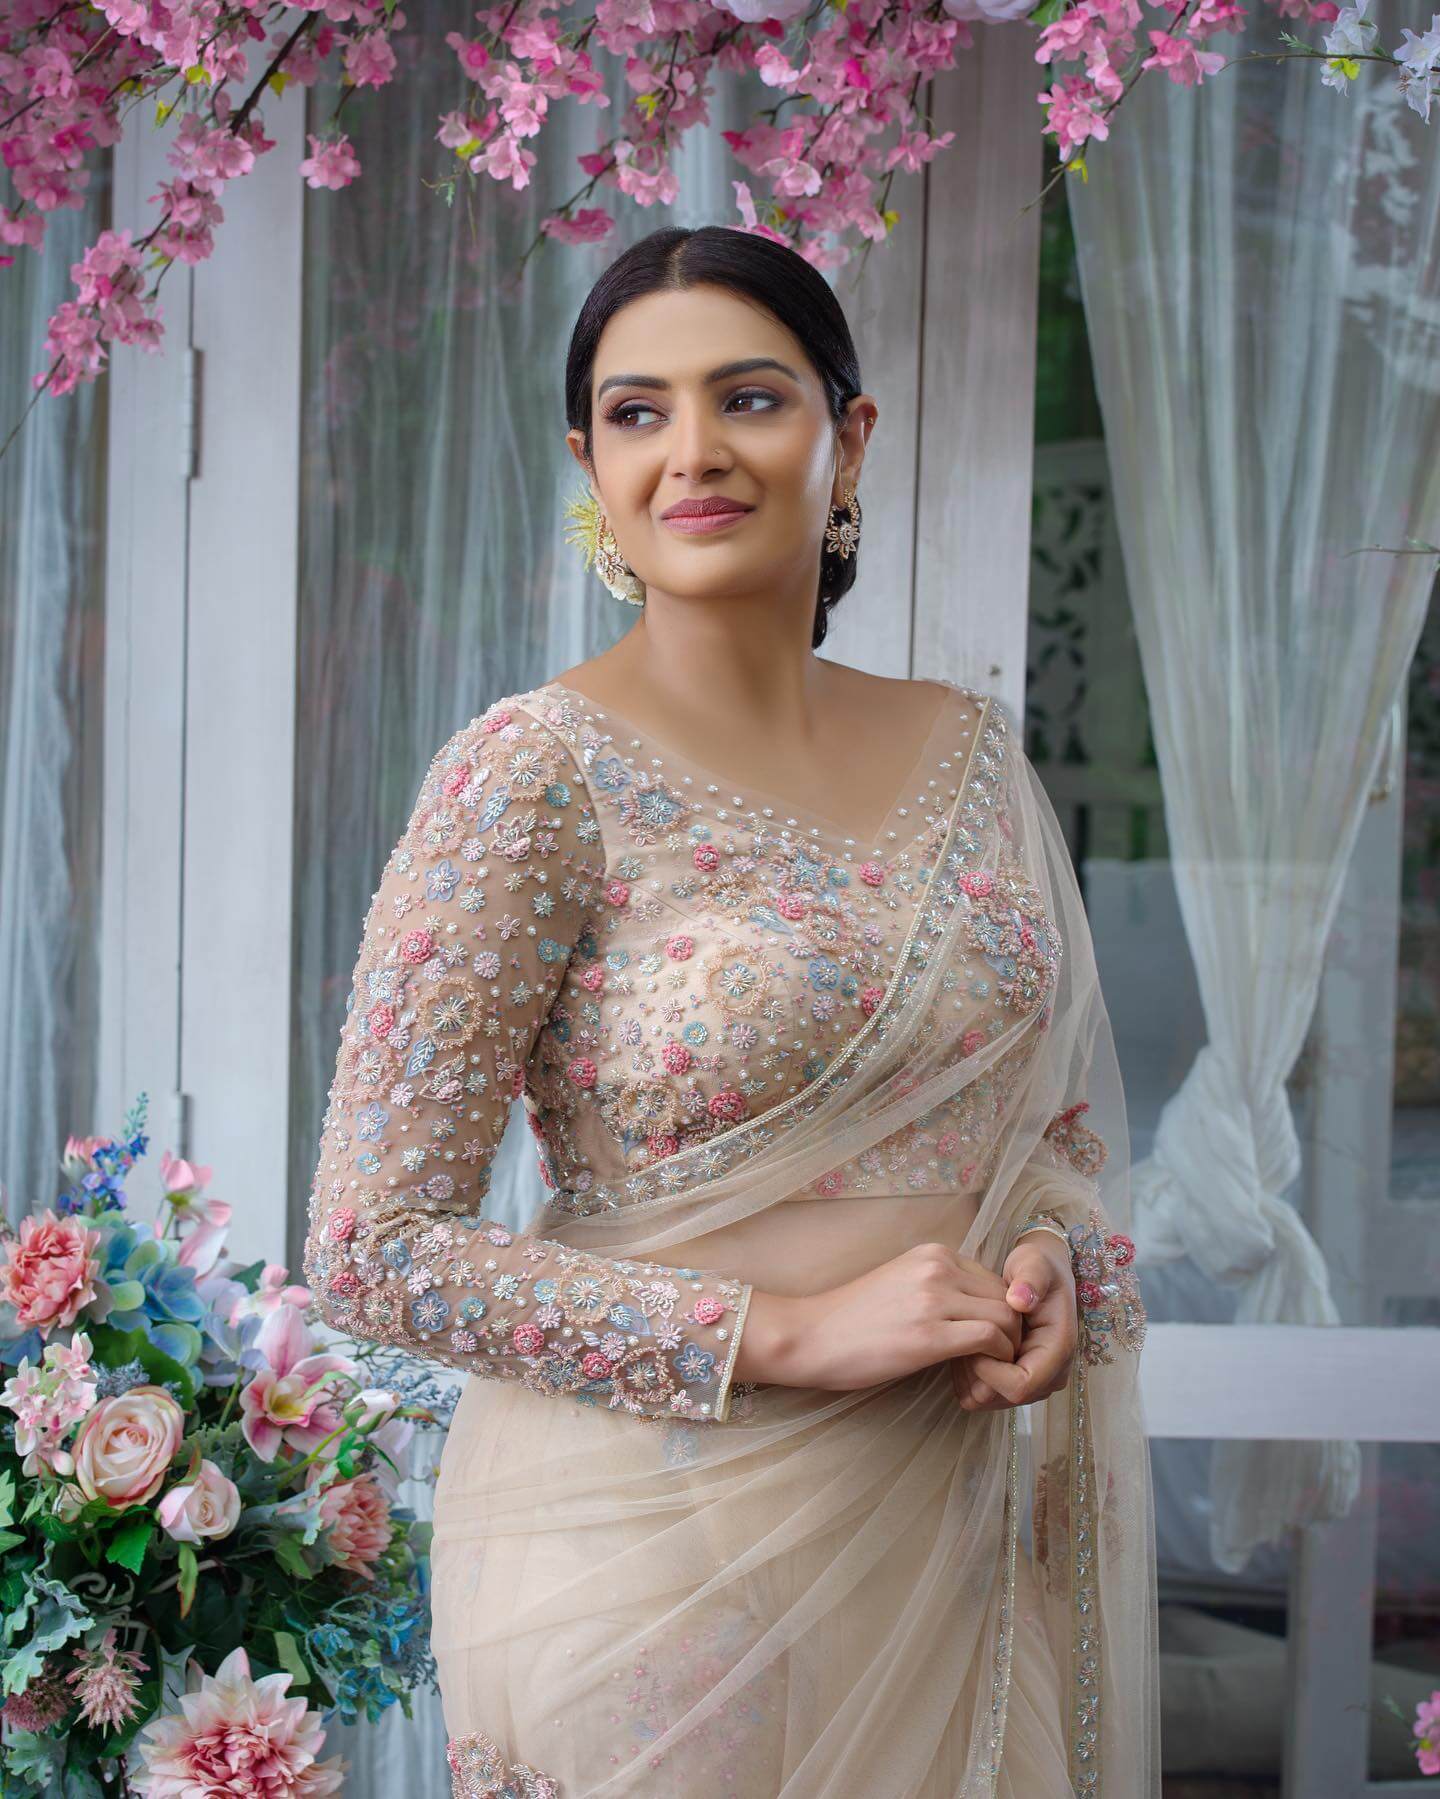 Actress Divya Pillai in stylish wedding saree